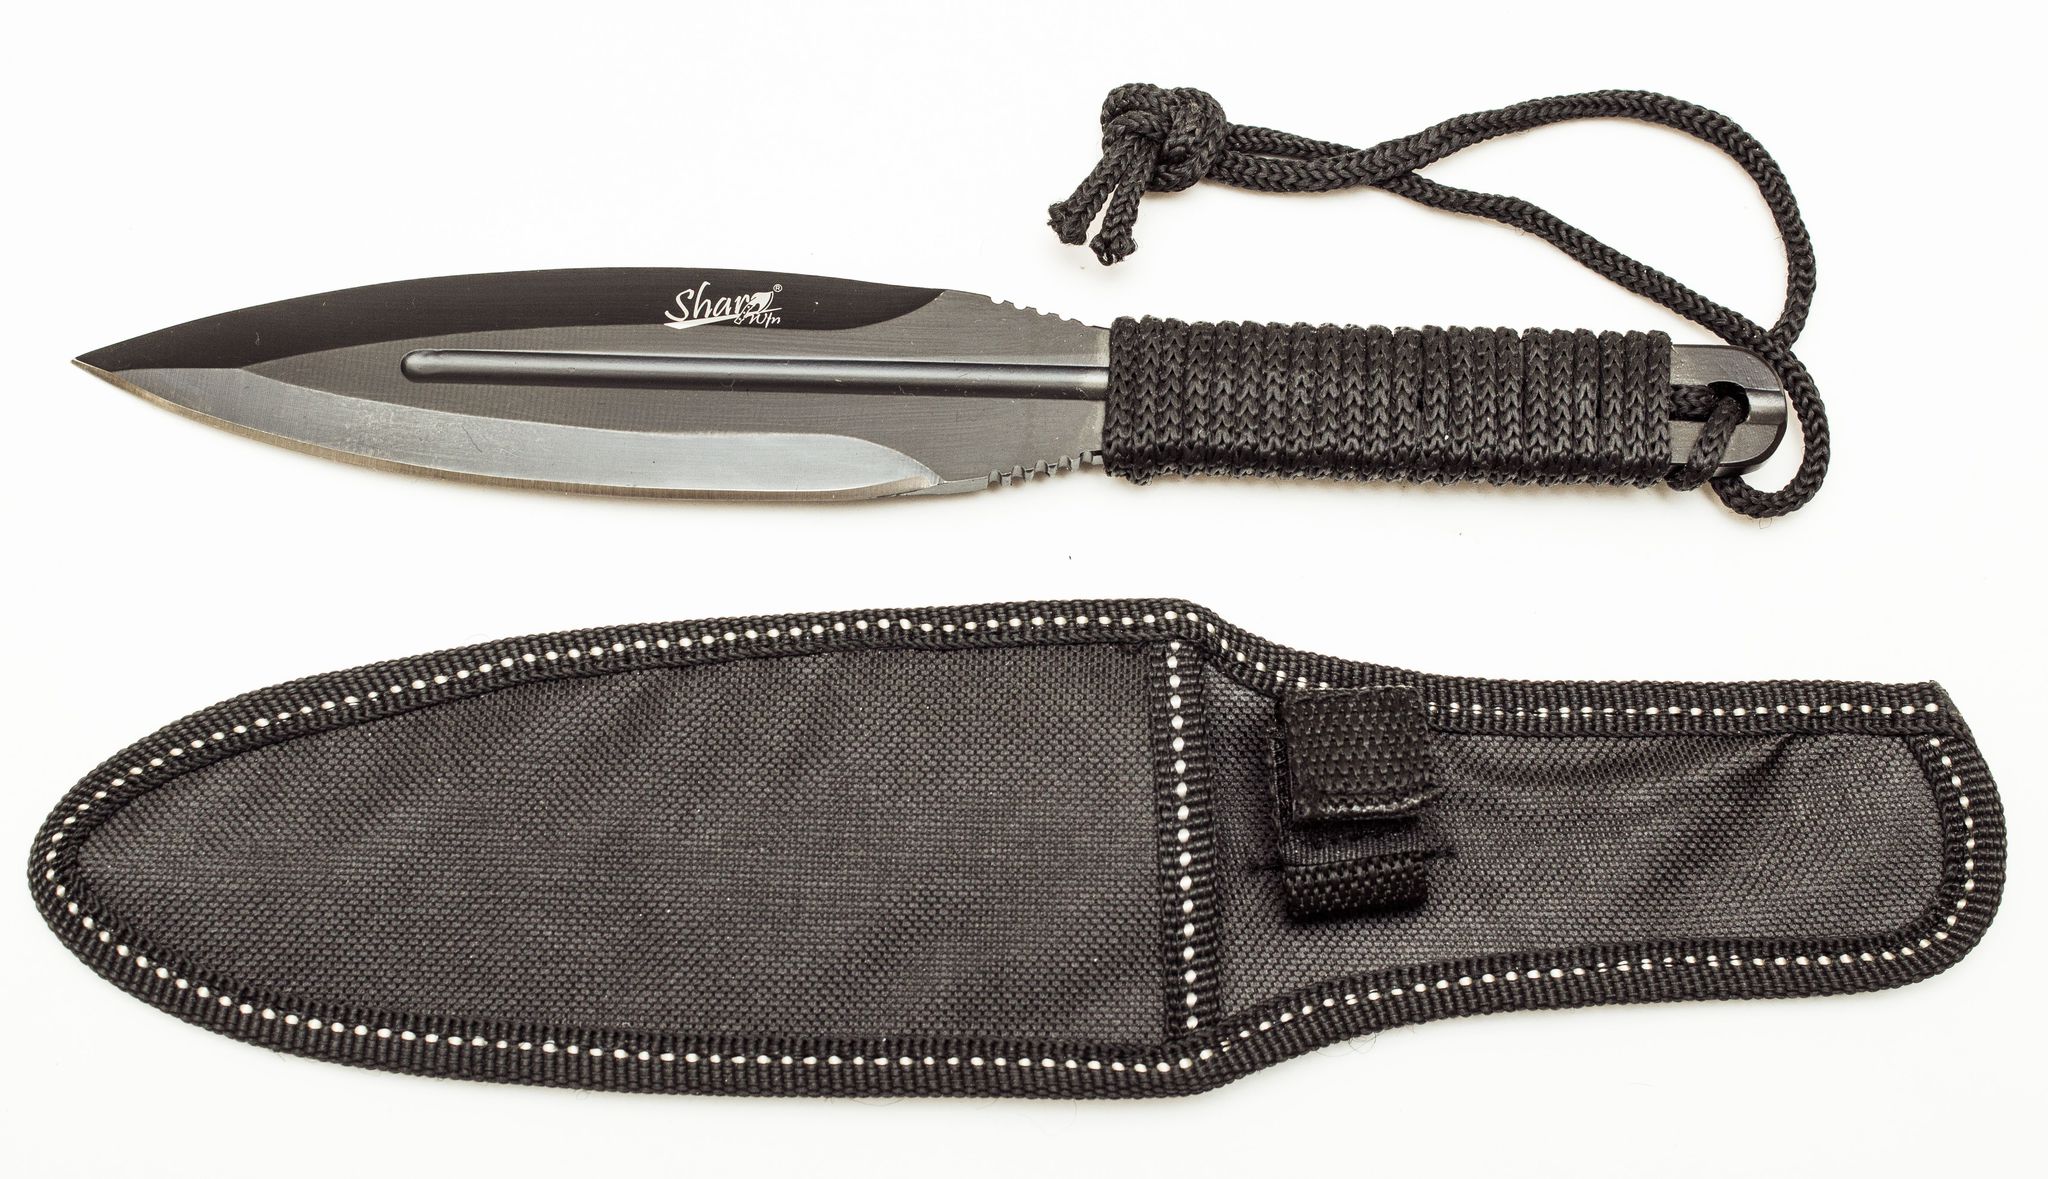 Спортивный нож Sharp black - фото 4